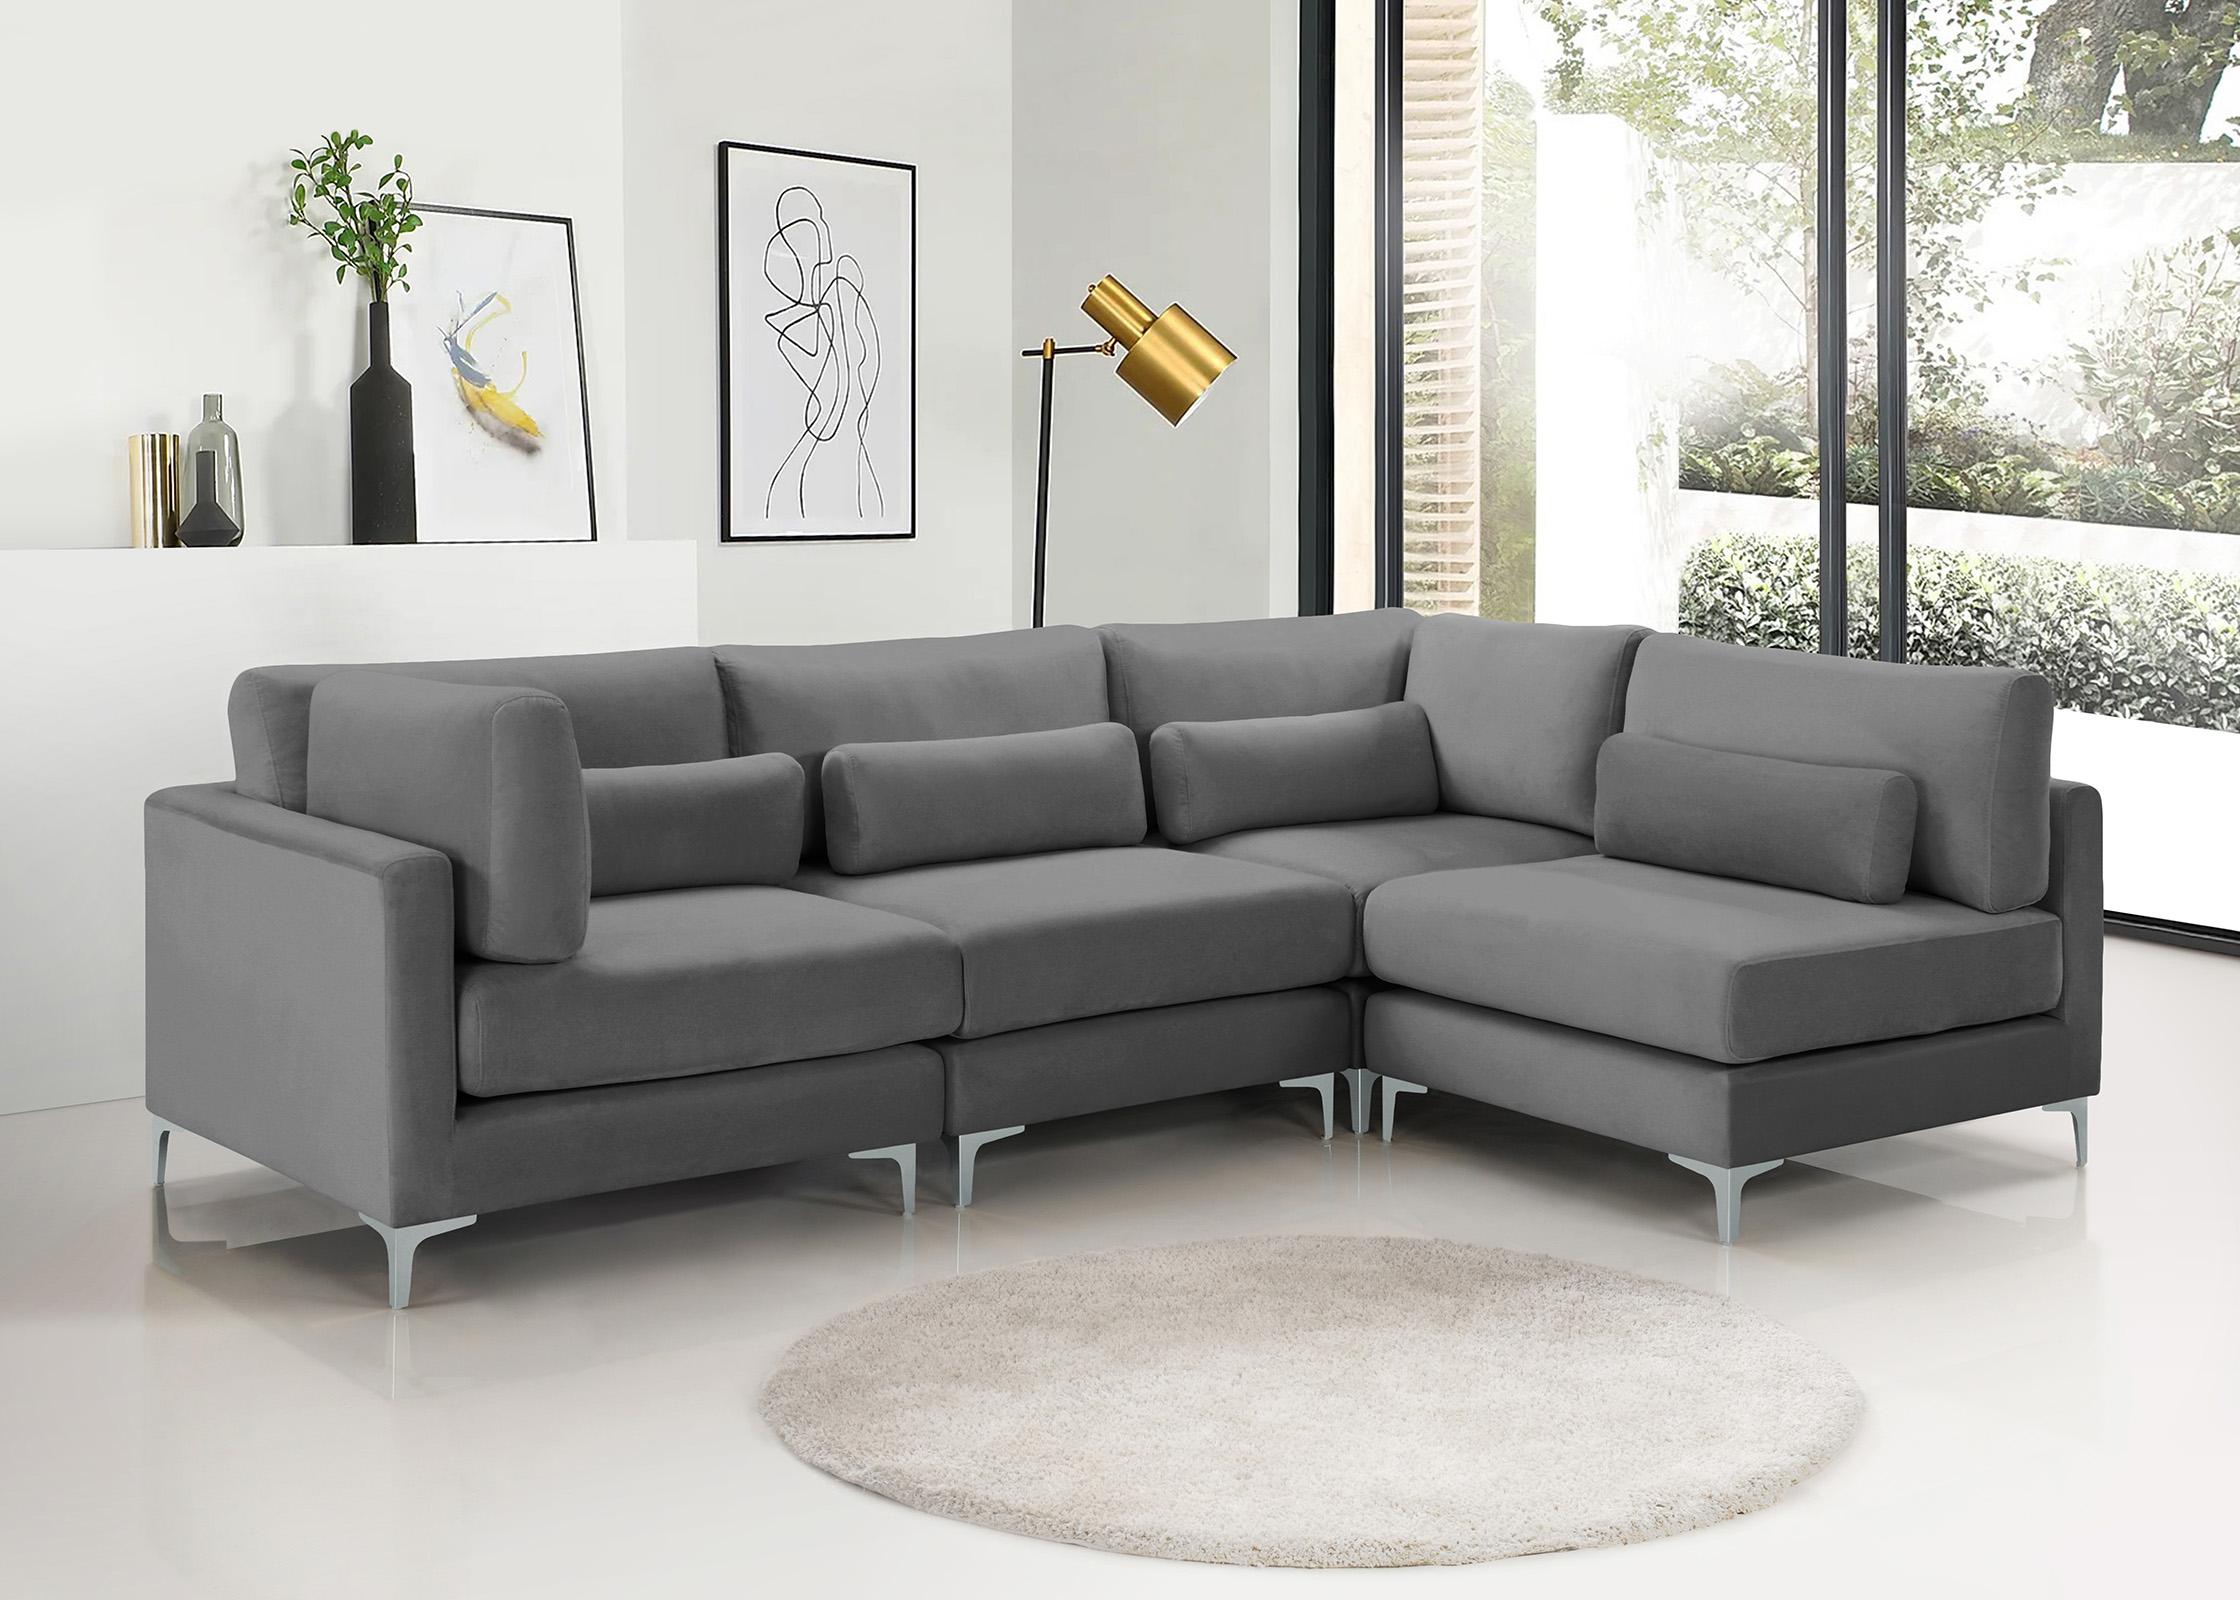 

    
Meridian Furniture JULIA 605Grey-Sec4B Modular Sectional Sofa Gray 605Grey-Sec4B
